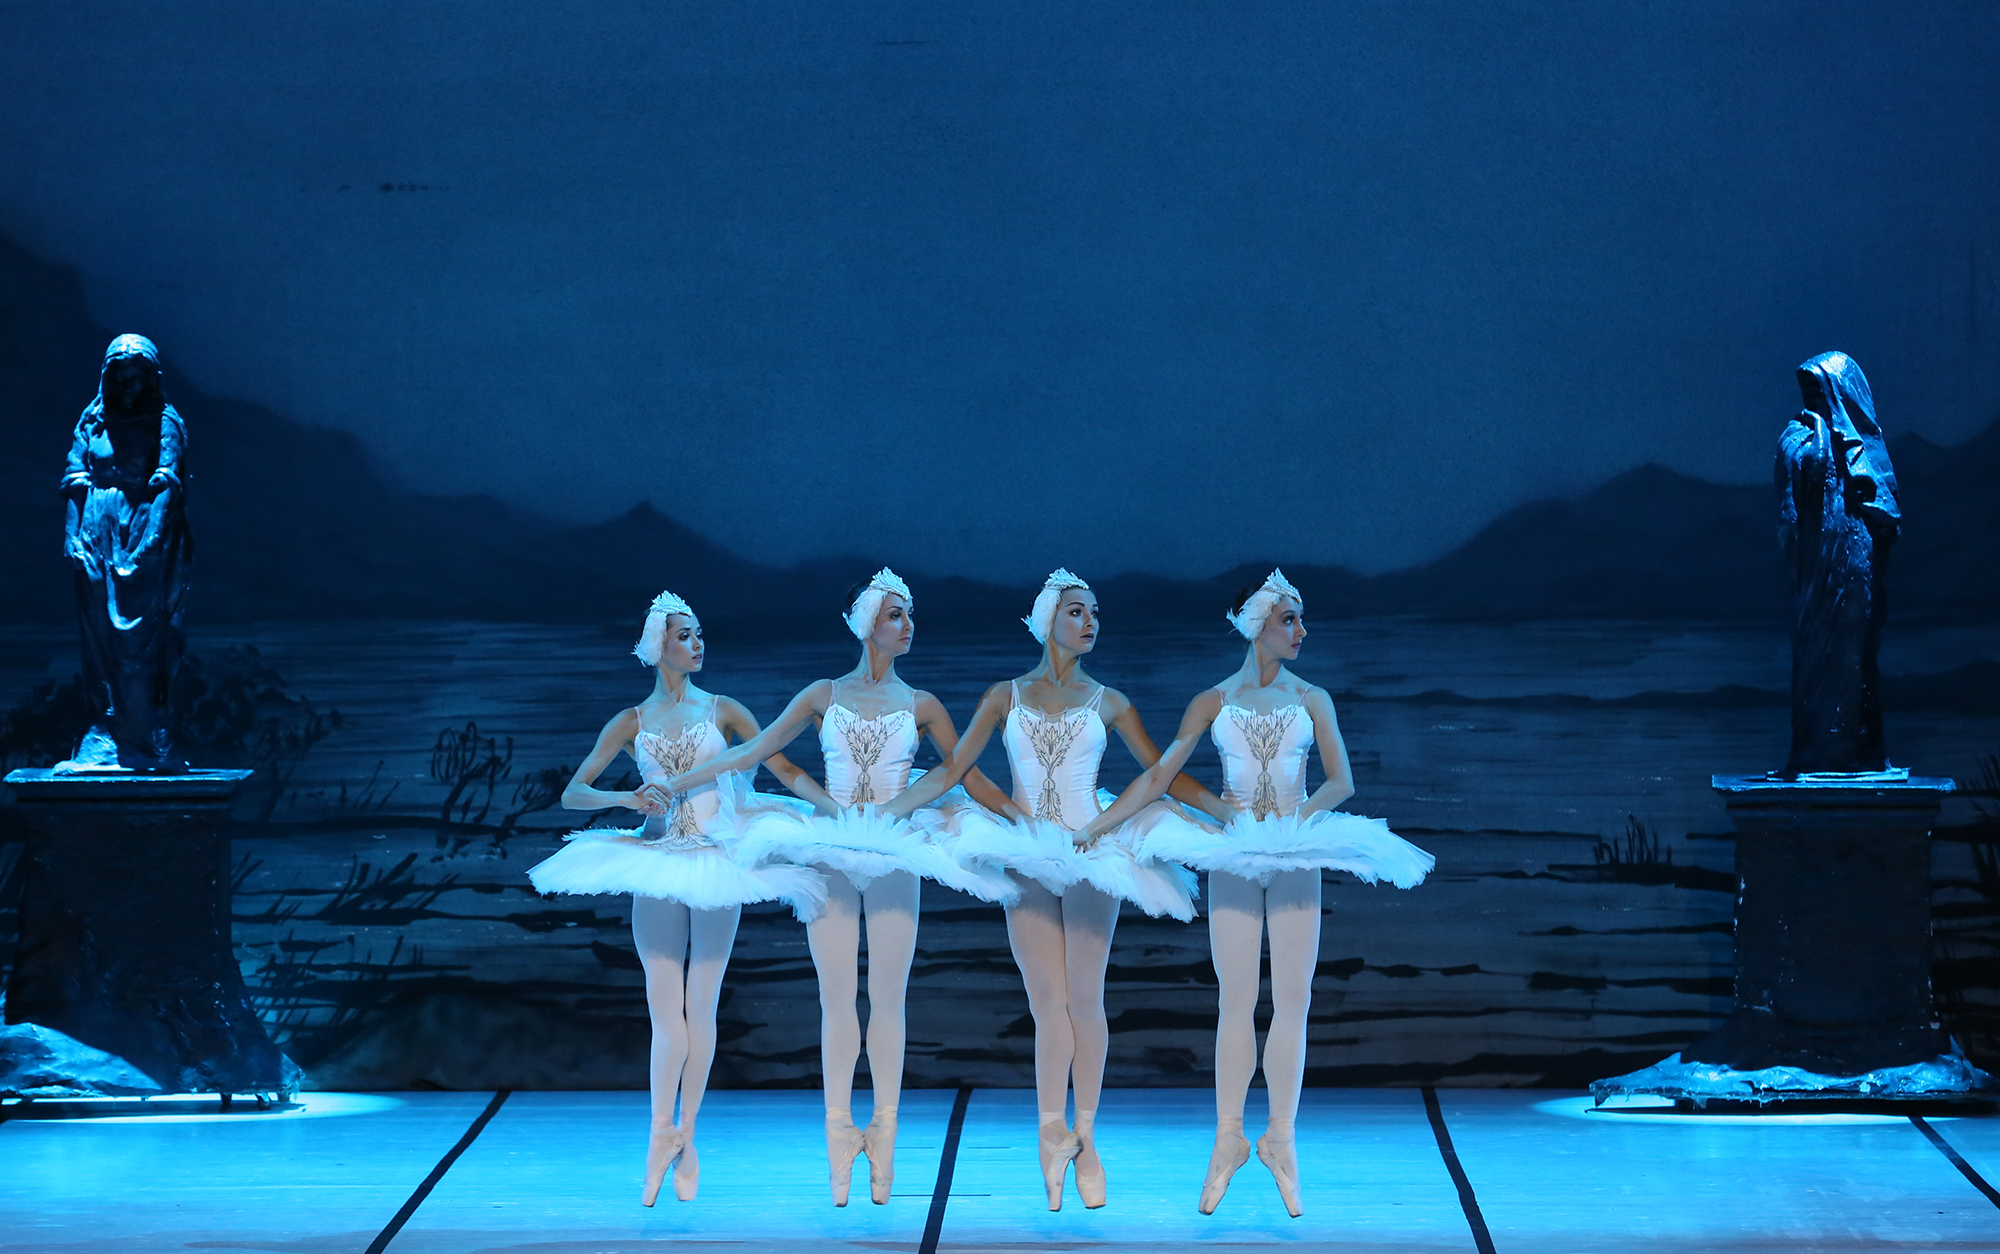 古典芭蕾舞剧天鹅湖在滨州保利大剧院隆重上演